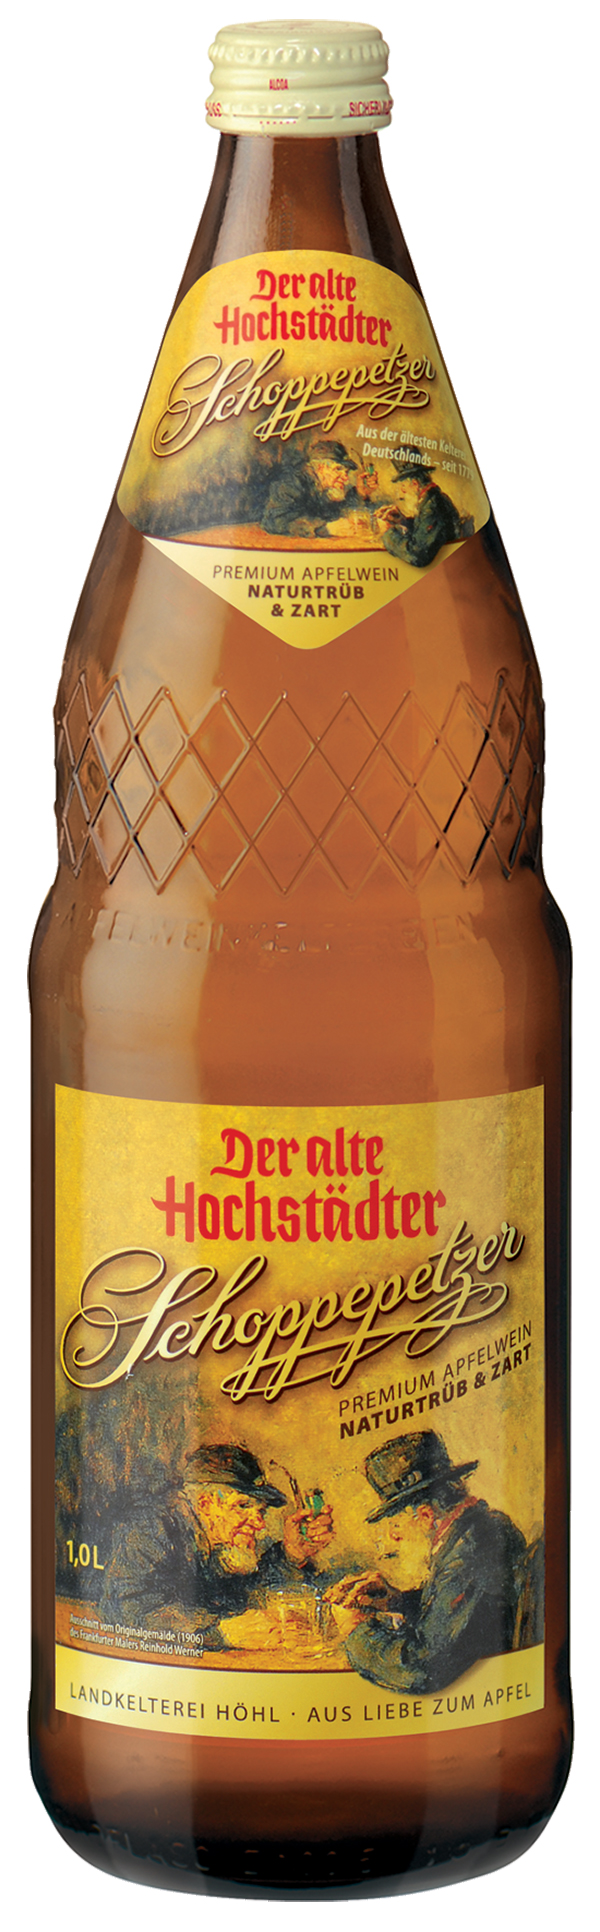 Der Alte Hochstädter Speyerling Apfelwein  6 x 1,0 l (Glas)